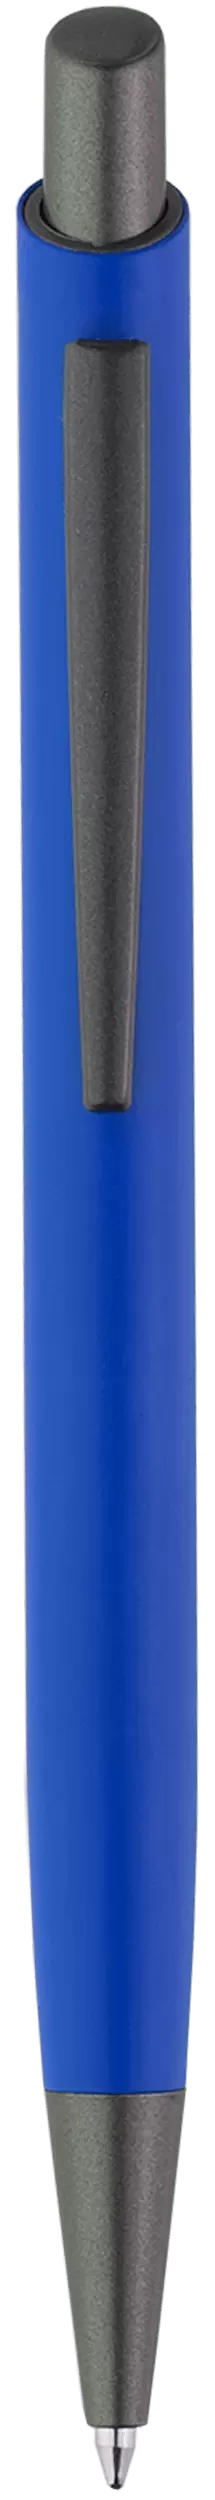 Ручка ELFARO TITAN Синяя 3052-01